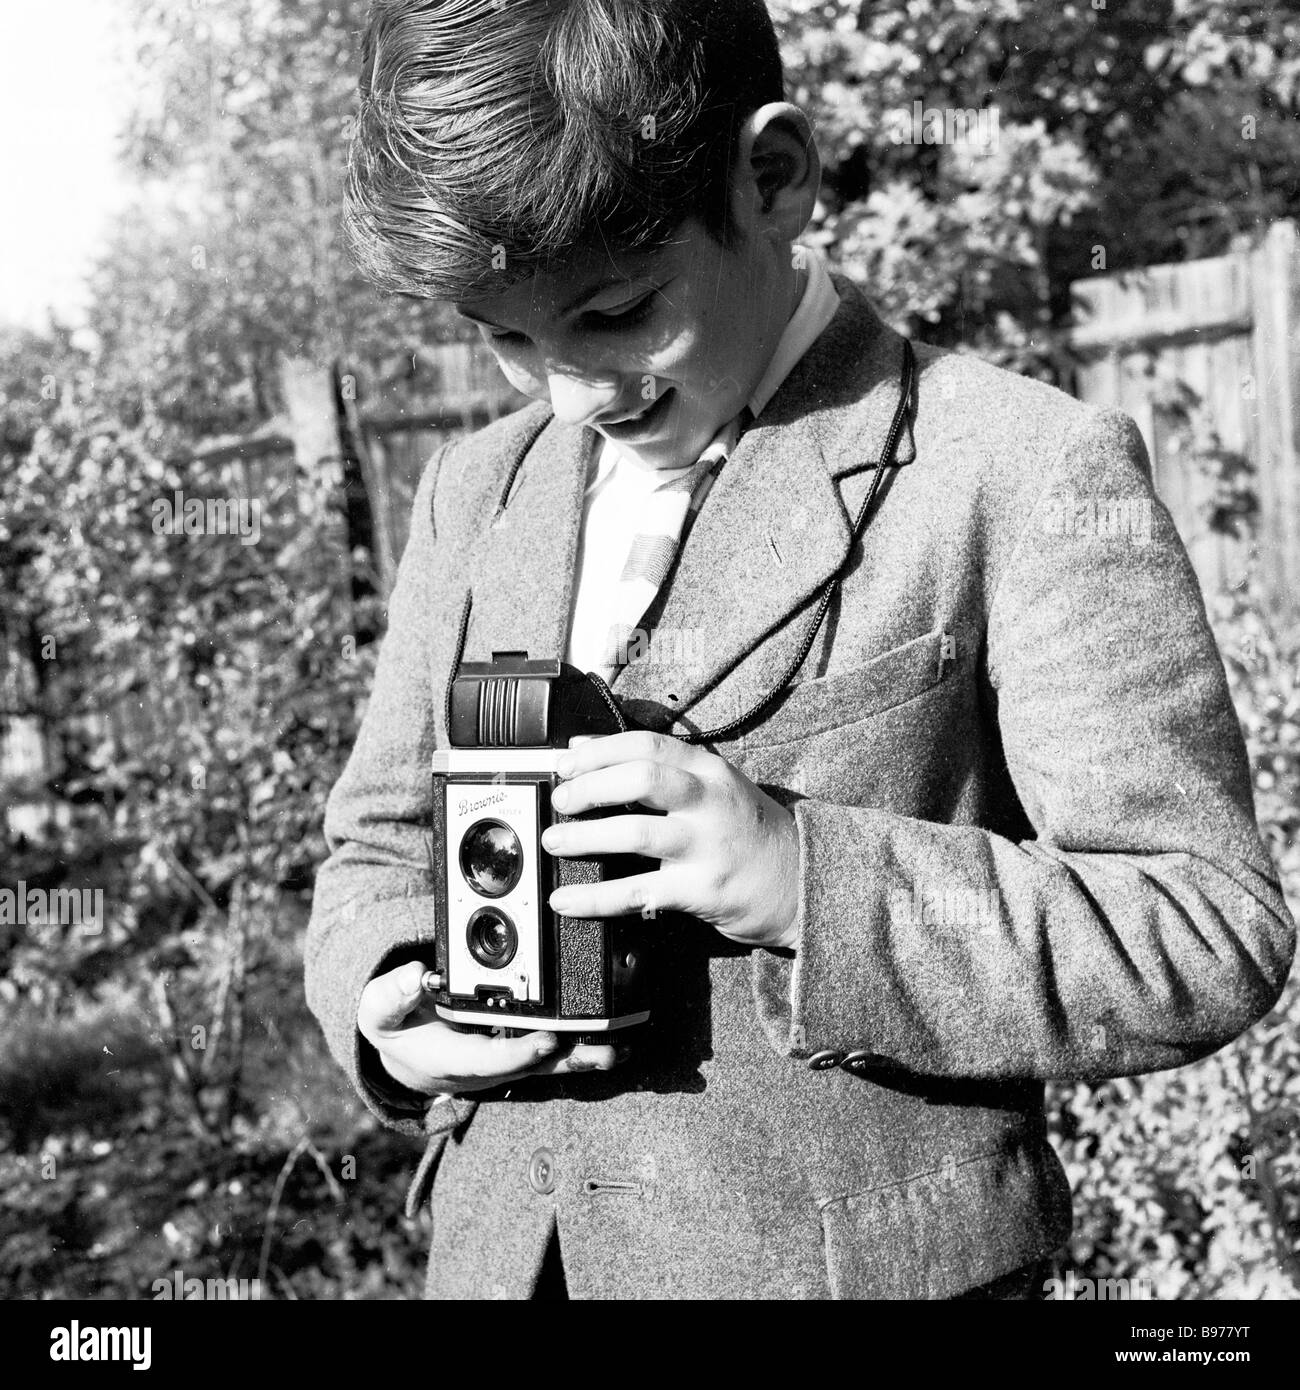 1950s, historique, regardant vers le bas son viseur, un adolescent dans un jardin utilisant un appareil photo Kodak Brownie reflex Box pour prendre une photo, Angleterre, Royaume-Uni. Banque D'Images